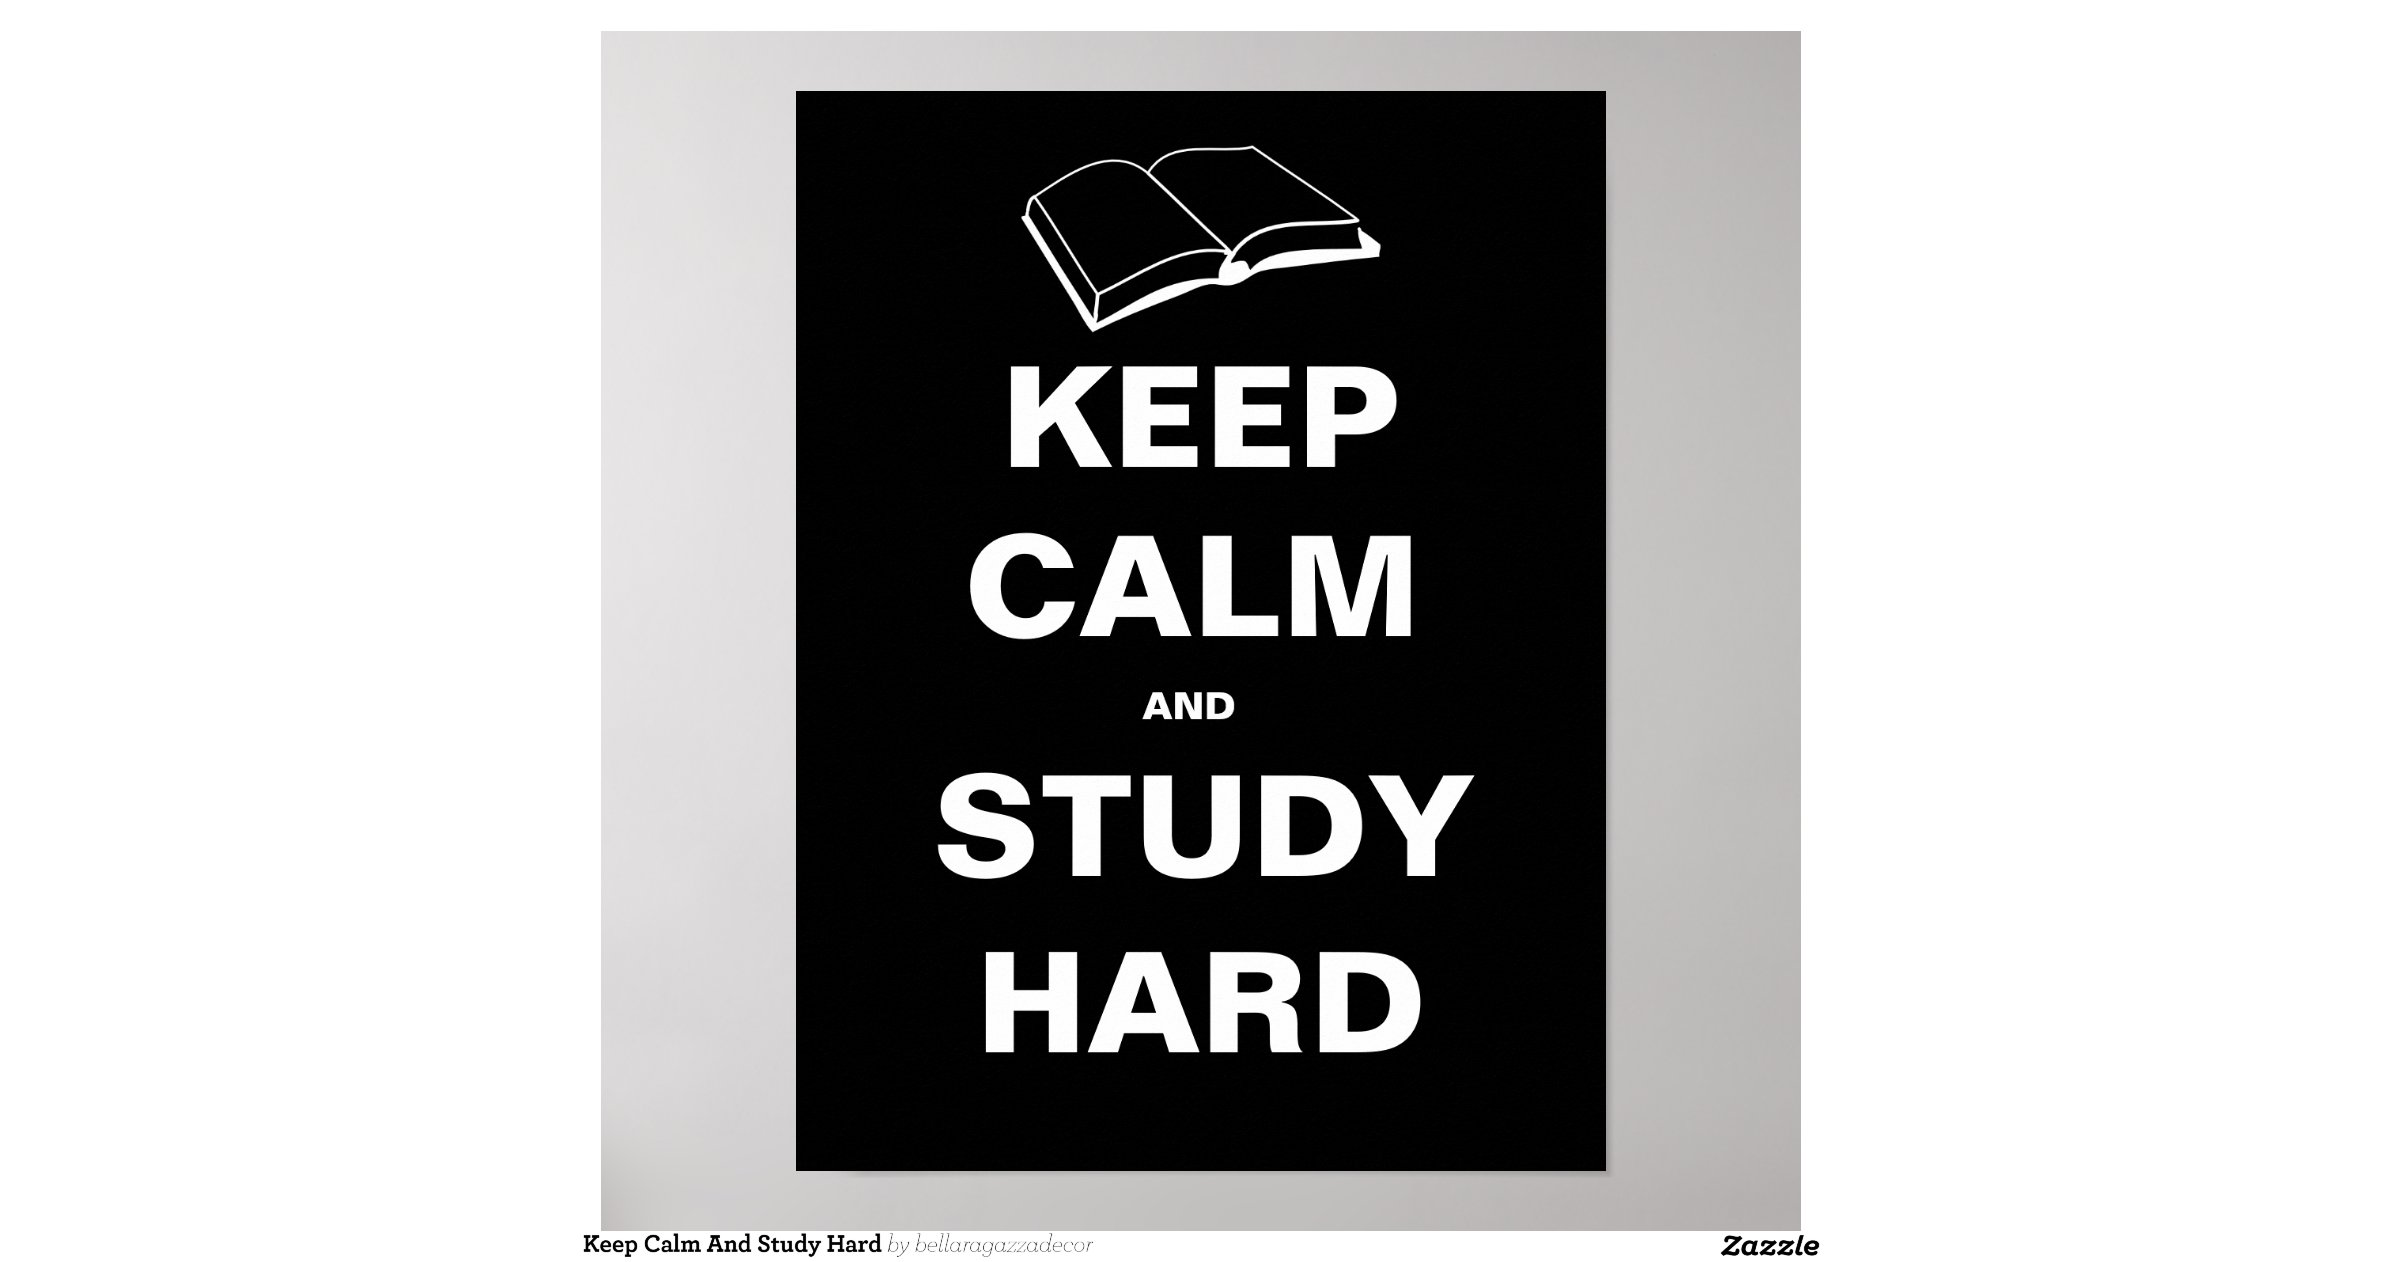 If i study harder